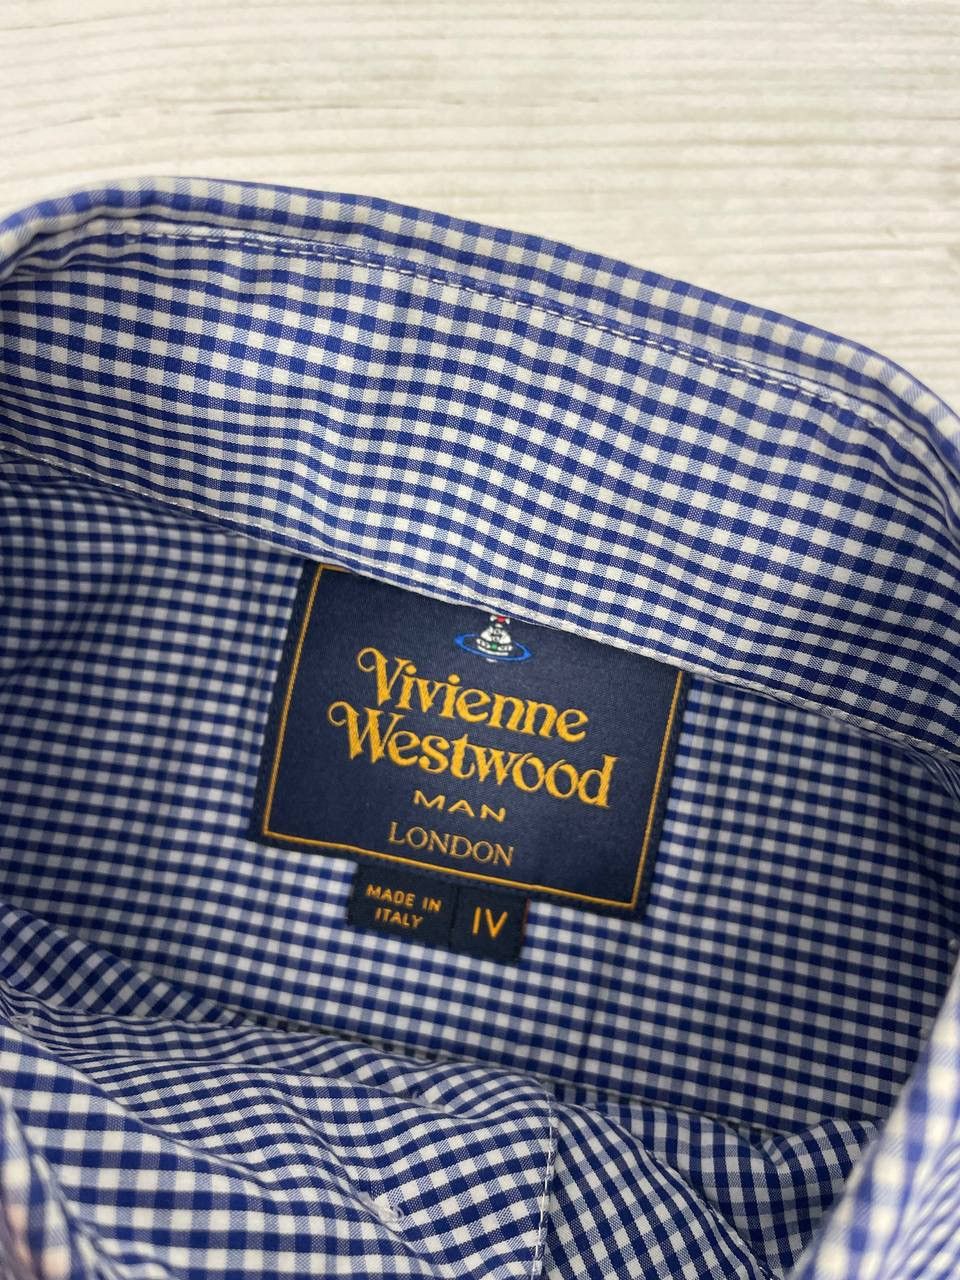 Vivienne Westwood Vivienne Westwood Shirt Buttons Long Sleeve Striped Luxury Size US L / EU 52-54 / 3 - 3 Thumbnail